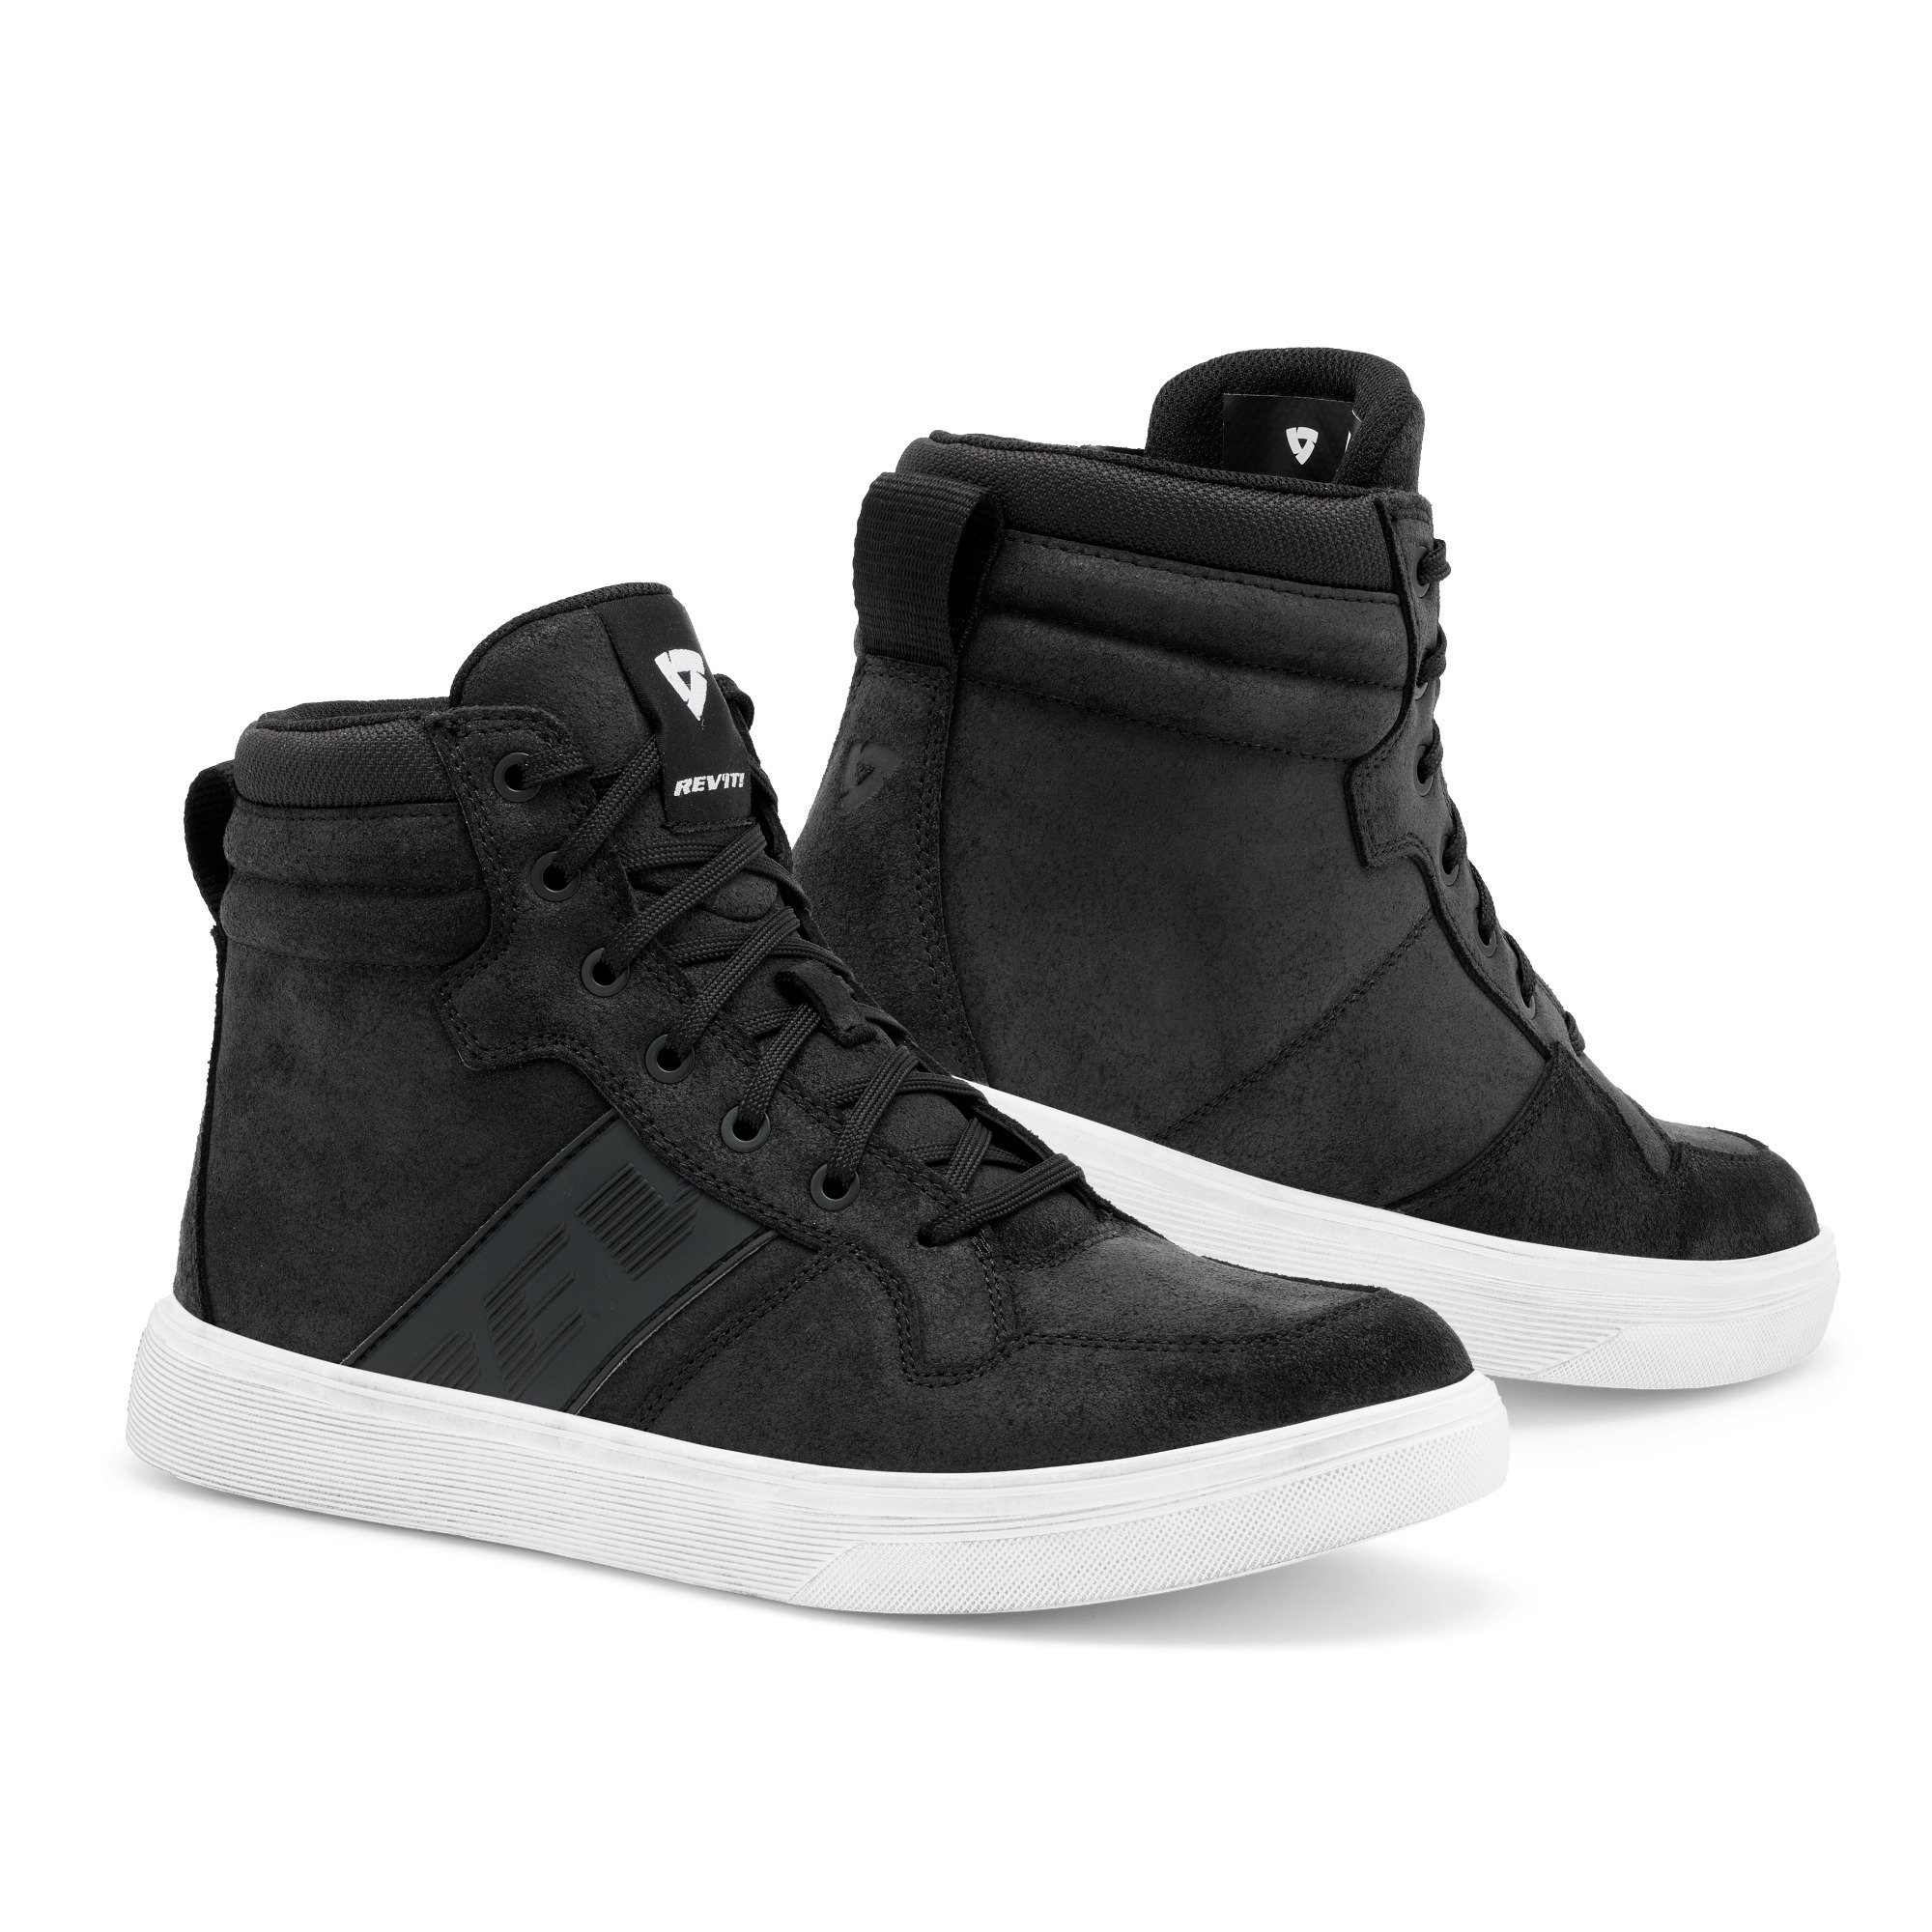 Image of REV'IT! Kick Shoes Black White Size 42 EN